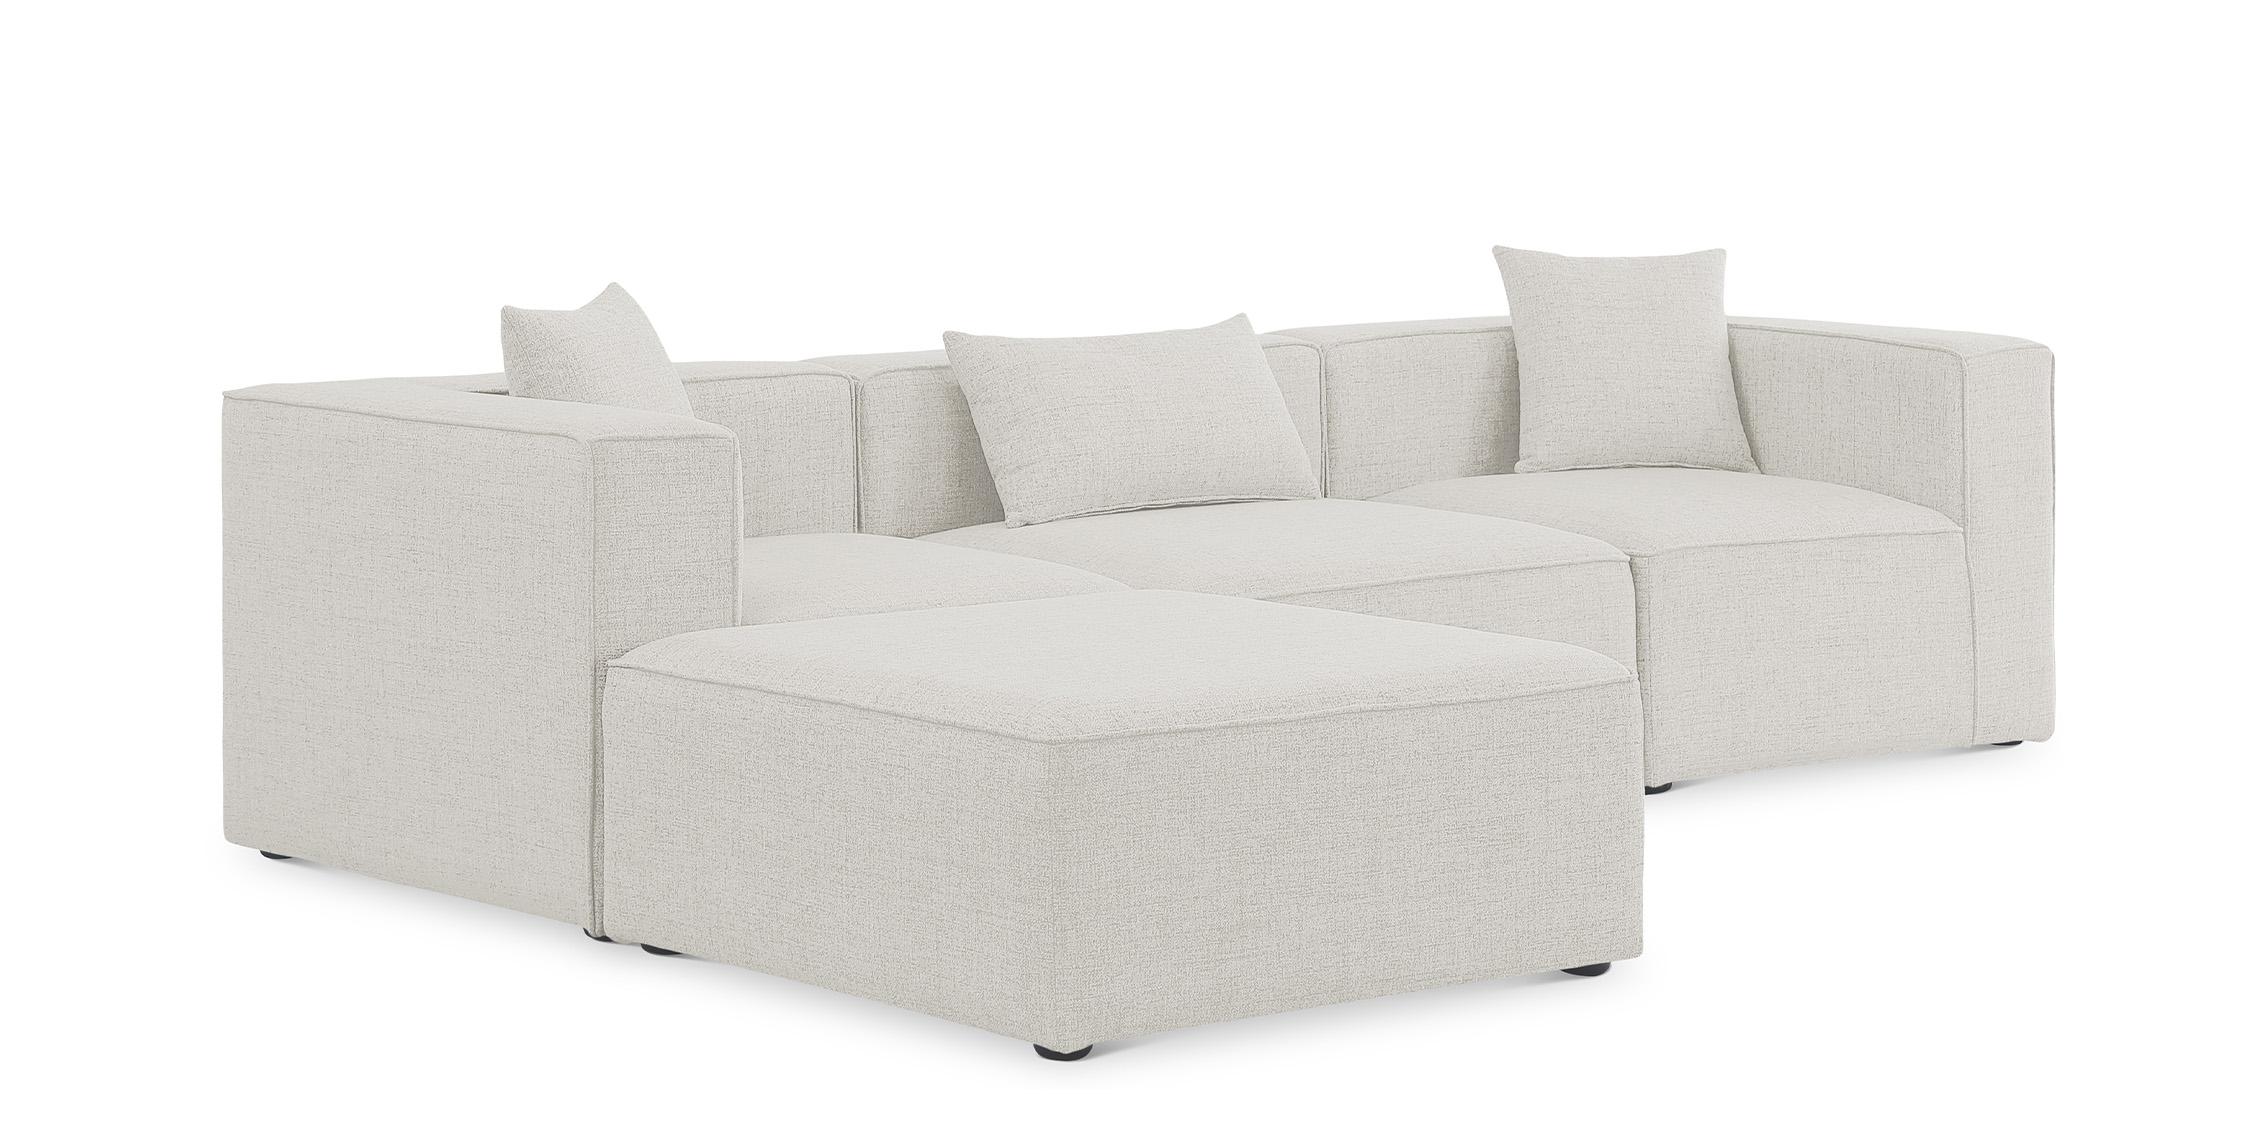 Contemporary, Modern Modular Sectional Sofa CUBE 630Cream-Sec4A 630Cream-Sec4A in Cream Linen